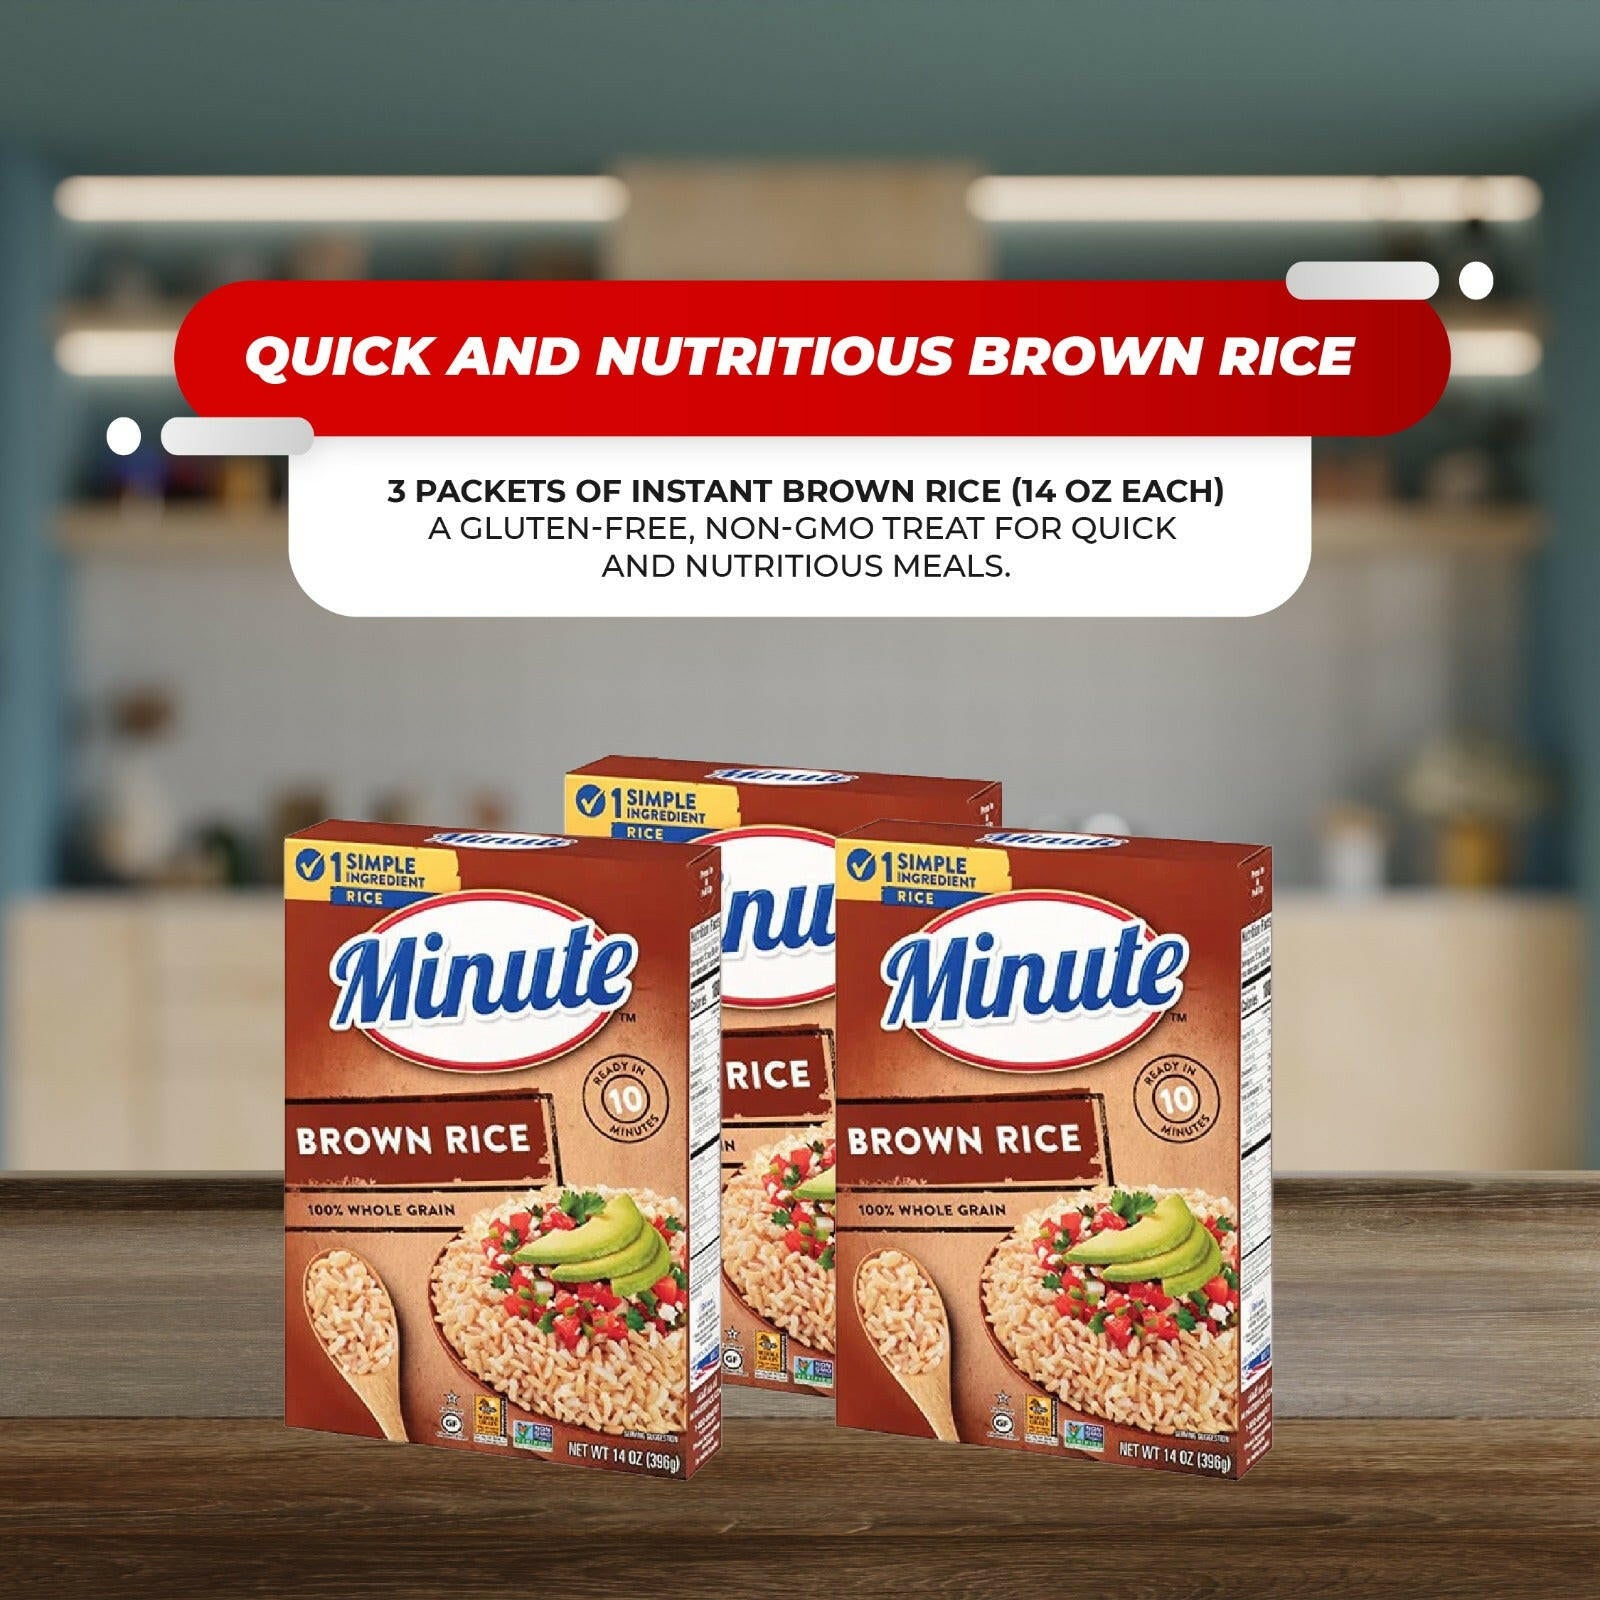 3 Minute Instant Brown Rice, Gluten Free, Non-GMO, 14 oz + 1 Catsa Essentials Plastic Stackable Snack Bowl 28 oz with Catsa Essentials Pack Box